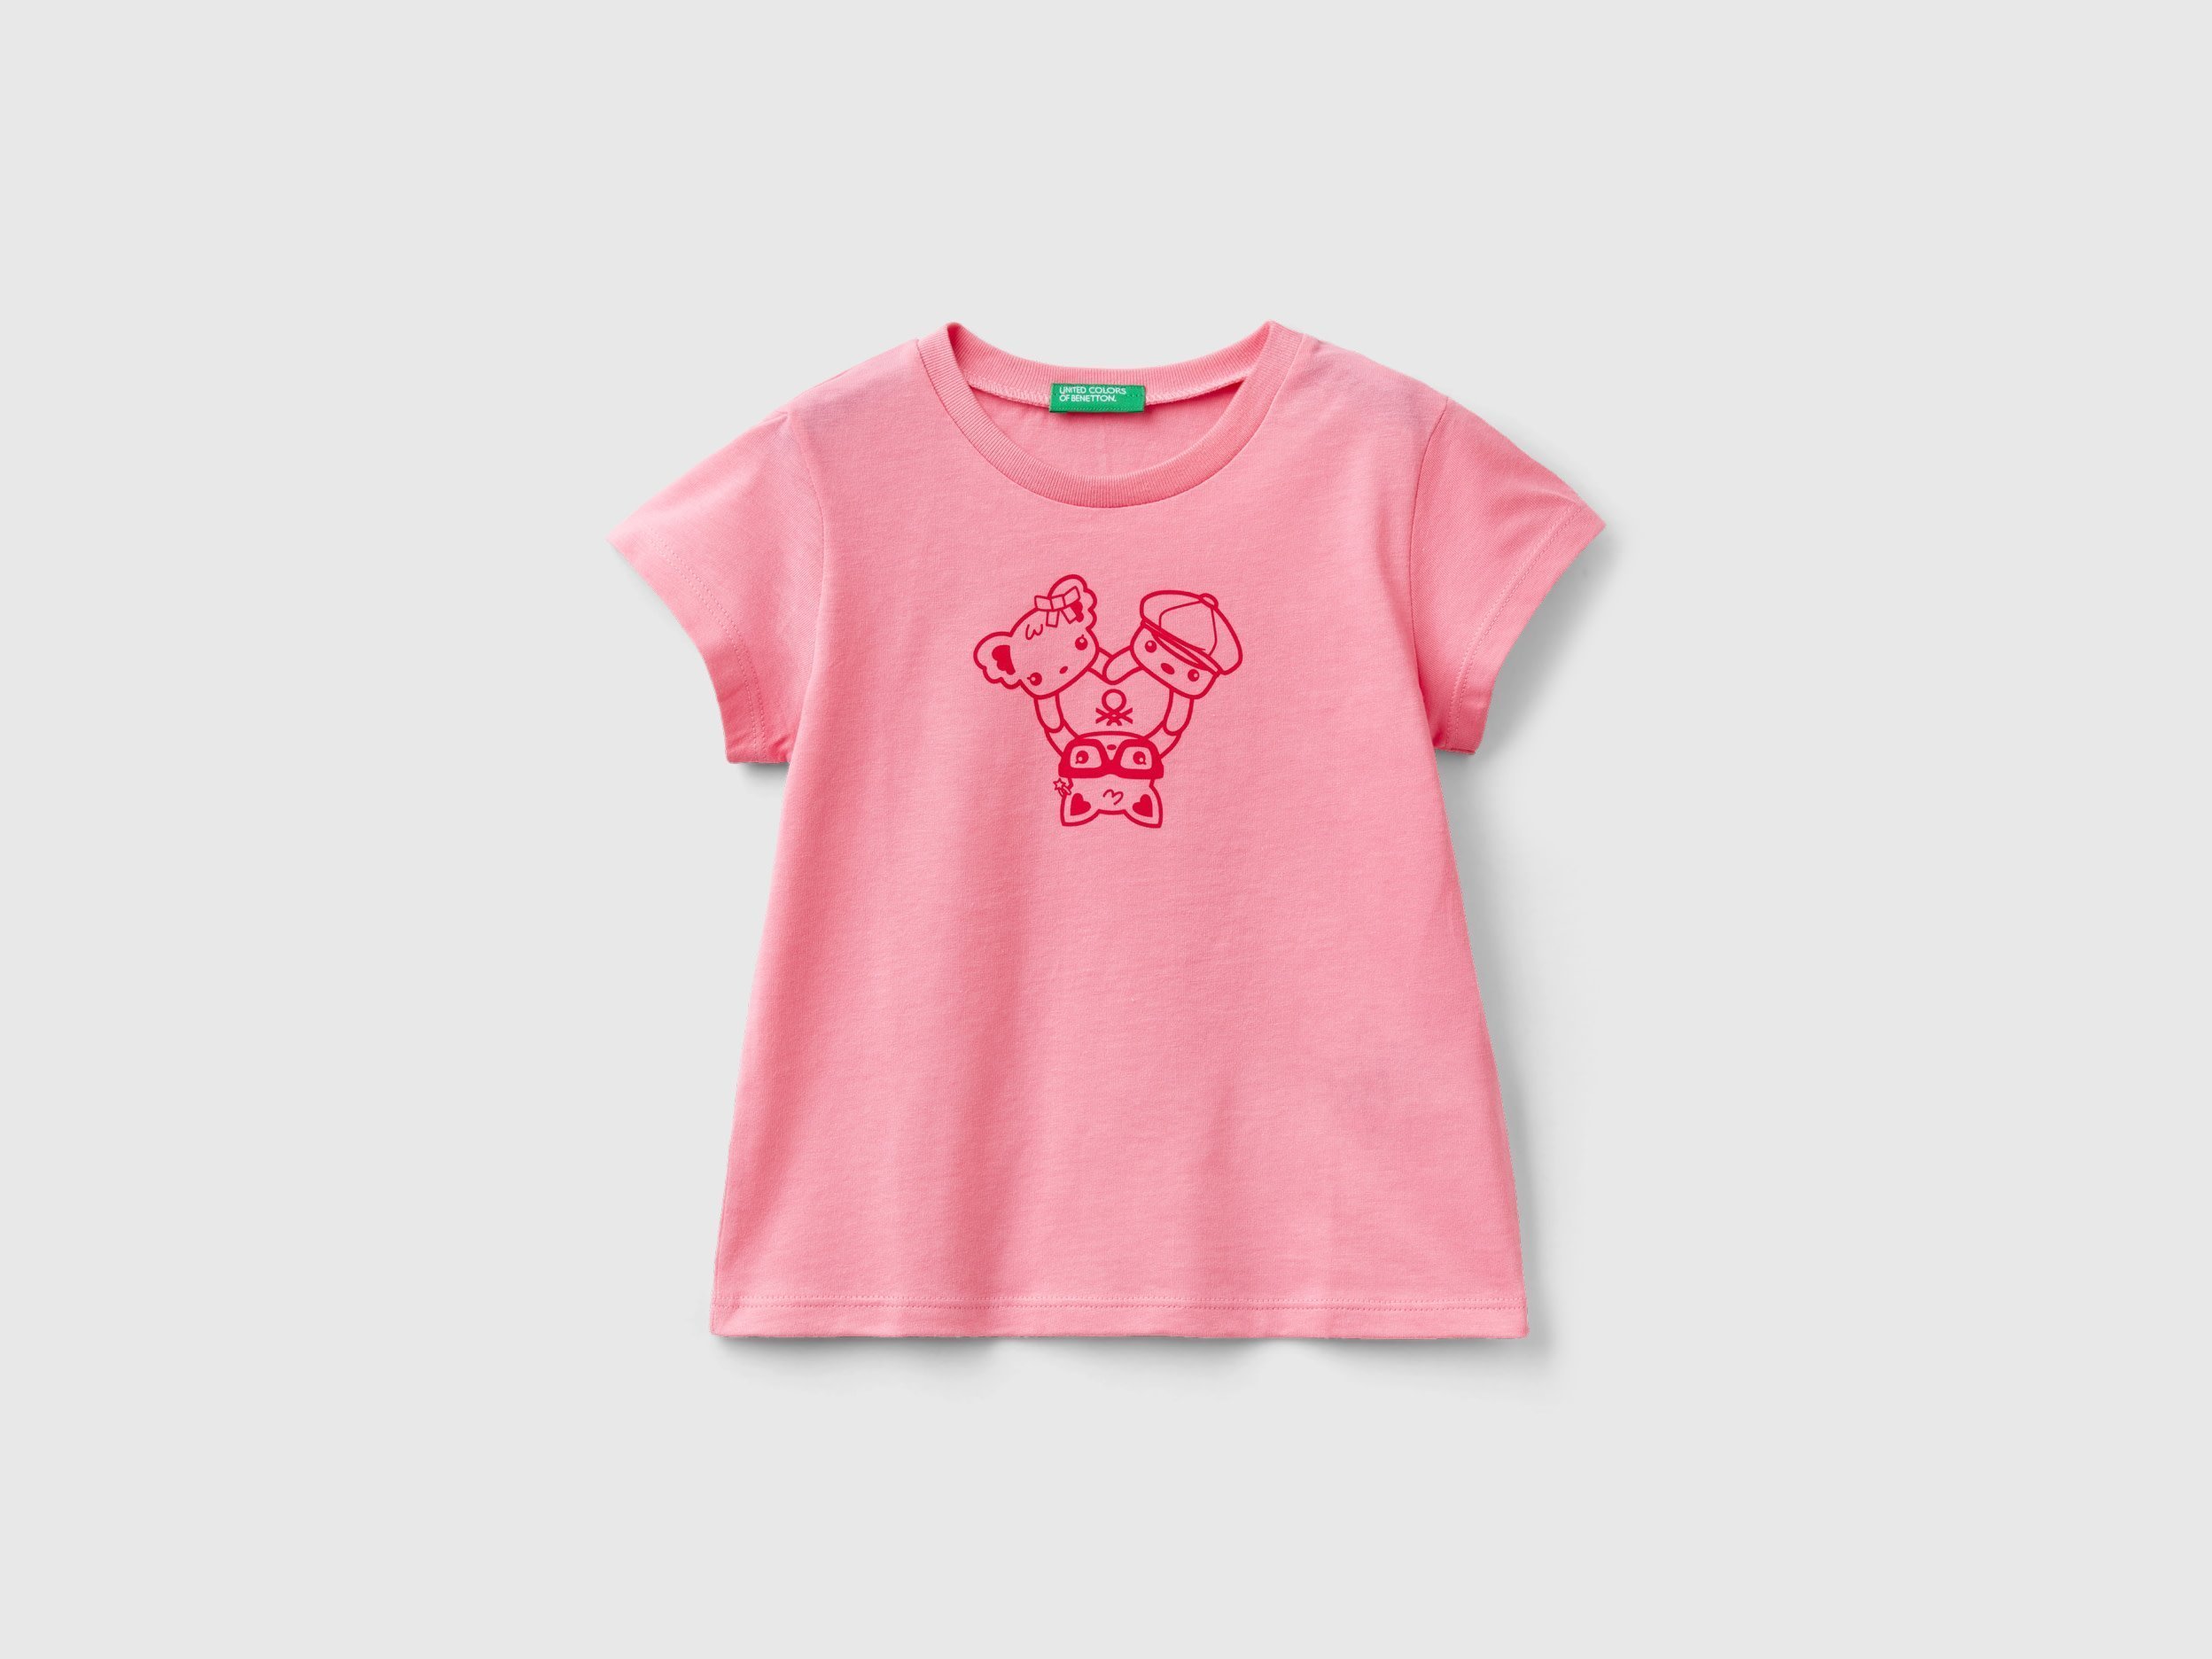 

детские розовые футболки Benetton для девочек 3096g10d7.p 3-4г, Розовый